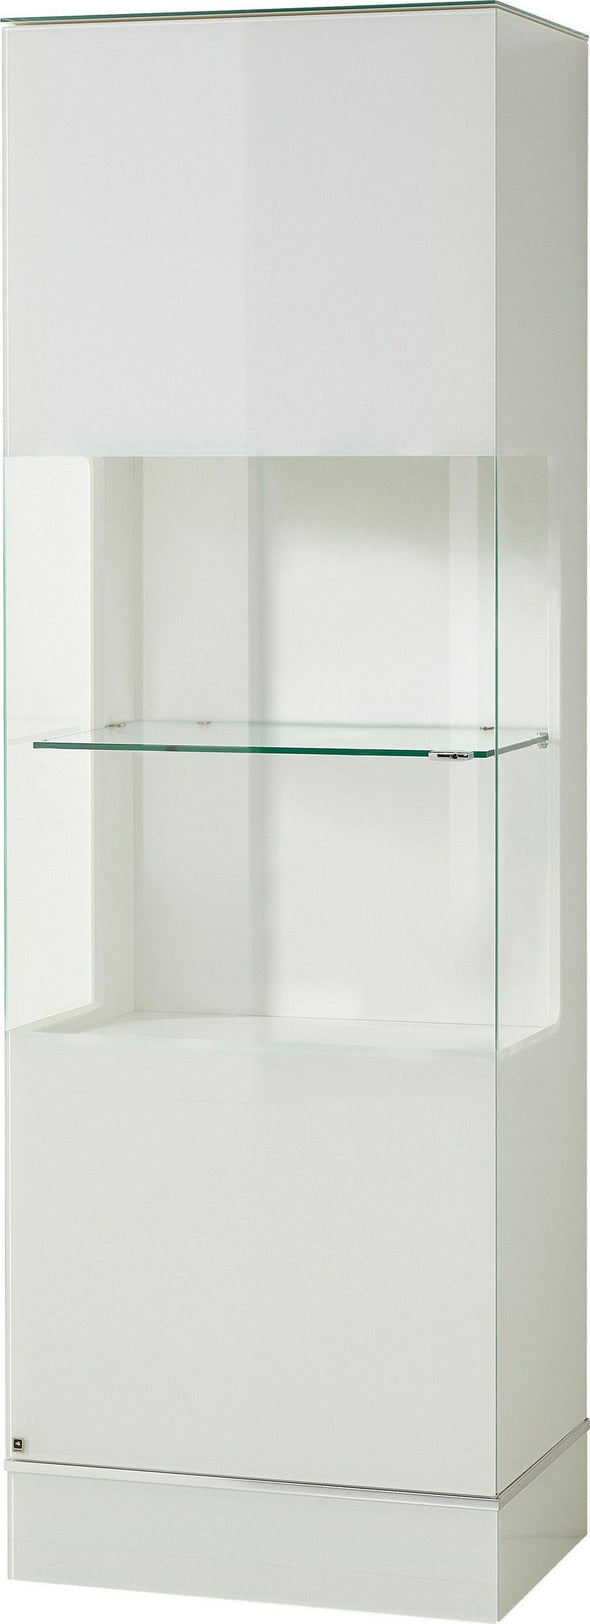 Vitrina cu sticlă CUBE, LEONARDO, 192 cm